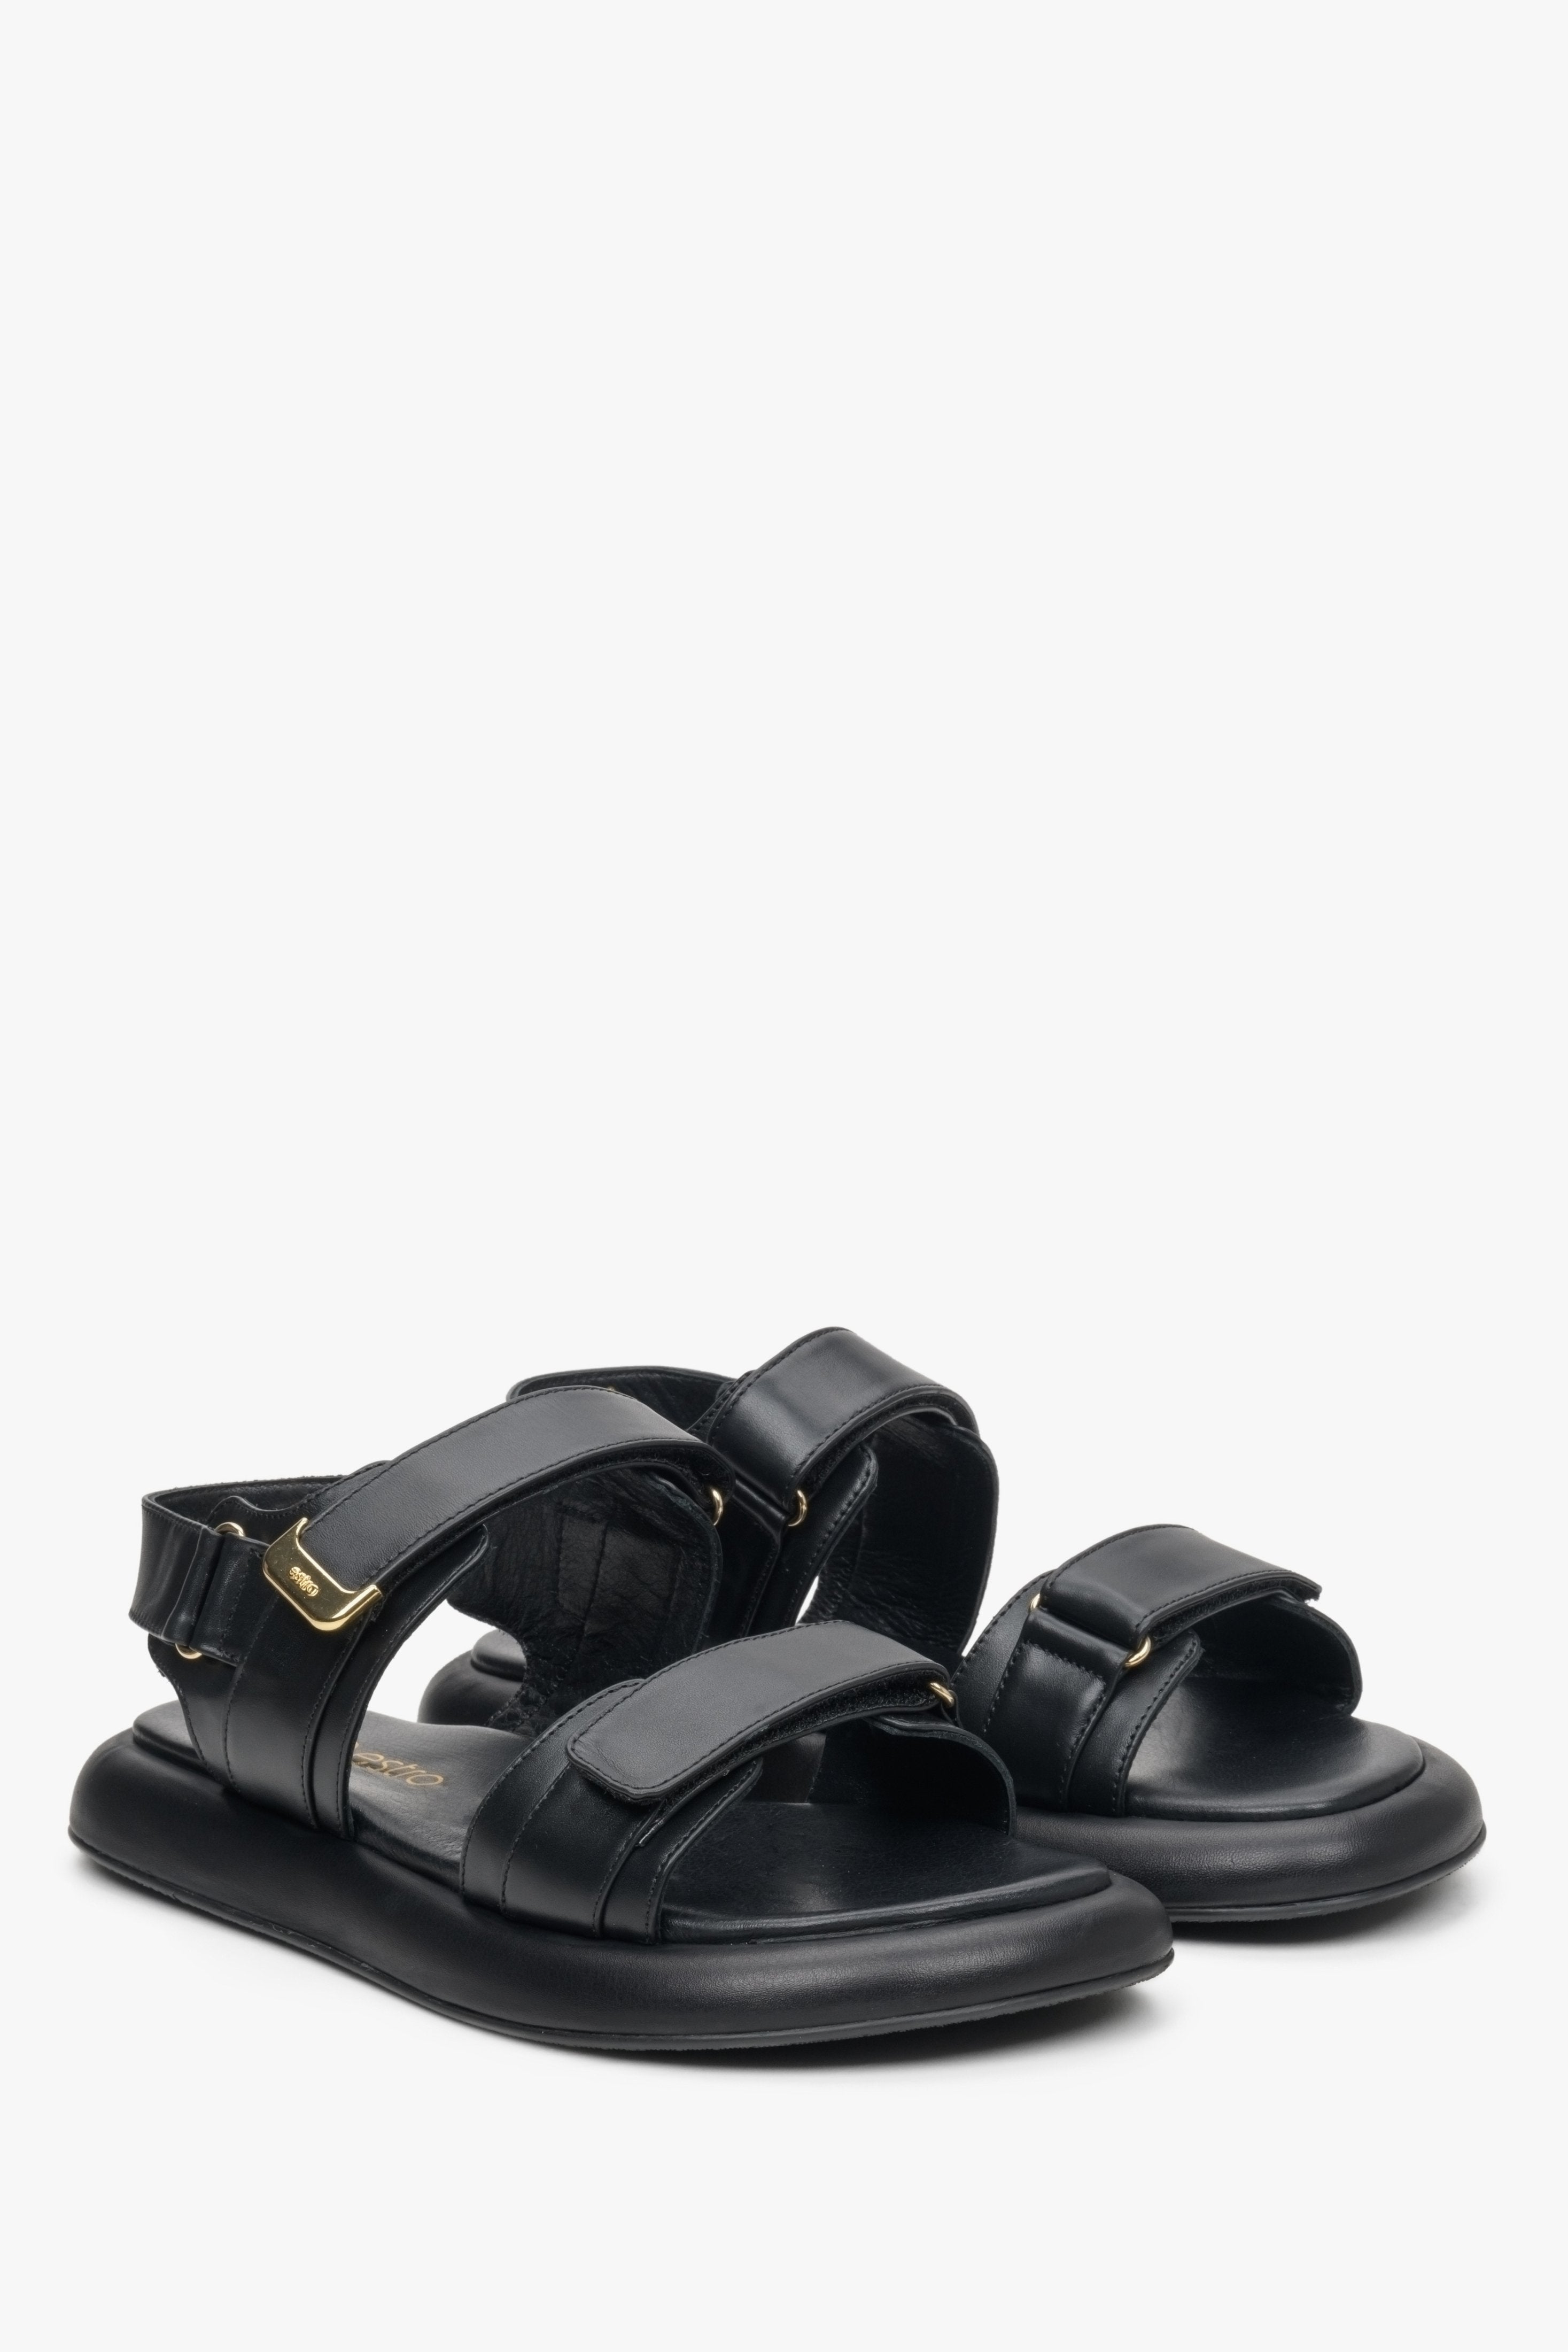 Czarne, skórzane sandały damskie na rzep marki Estro - prezentacja czubka butów.